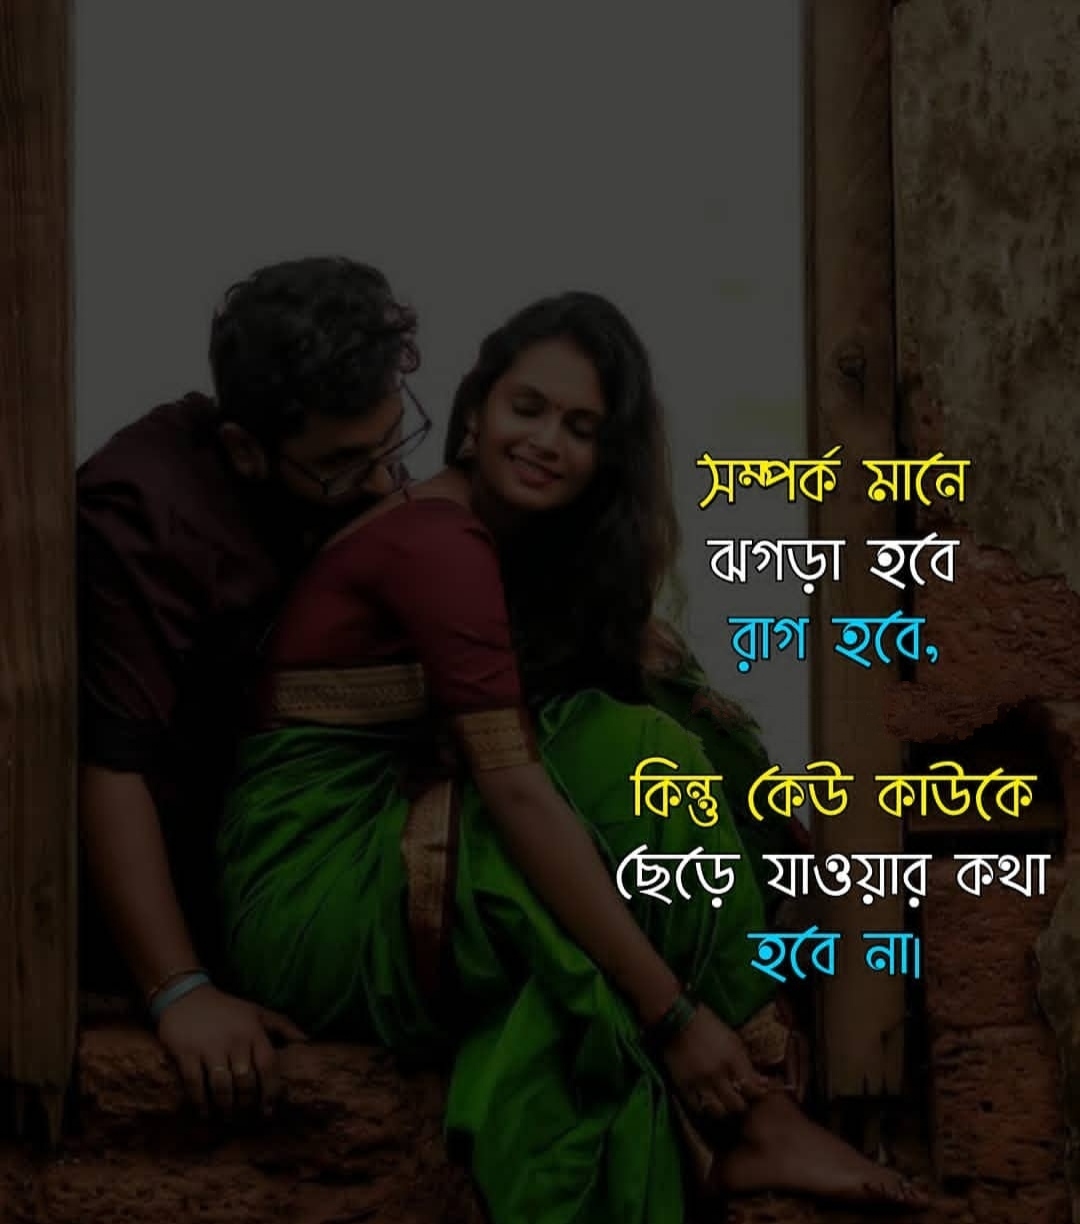 30best Romantic Bangla Love Sms ভালোবাসার রোমান্টিক এসএমএস ও স্ট্যাটাস